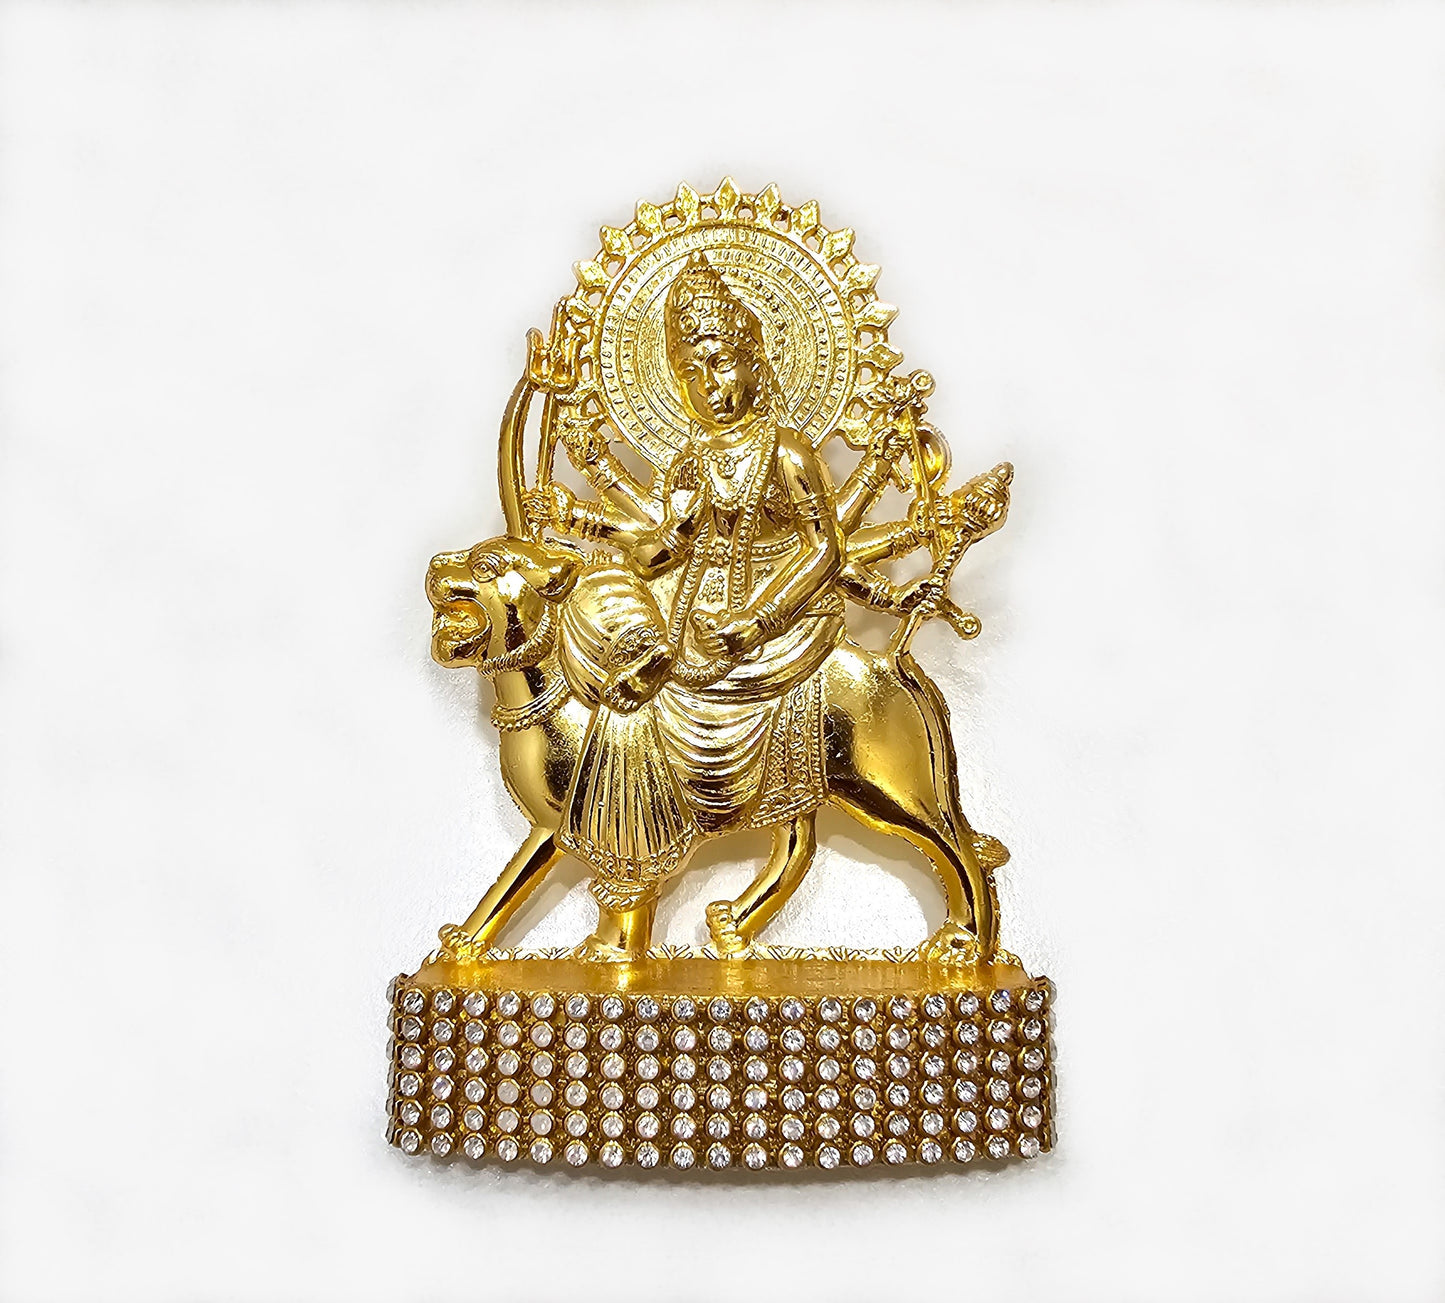 Goddess Durga Sherawali Mata Statue